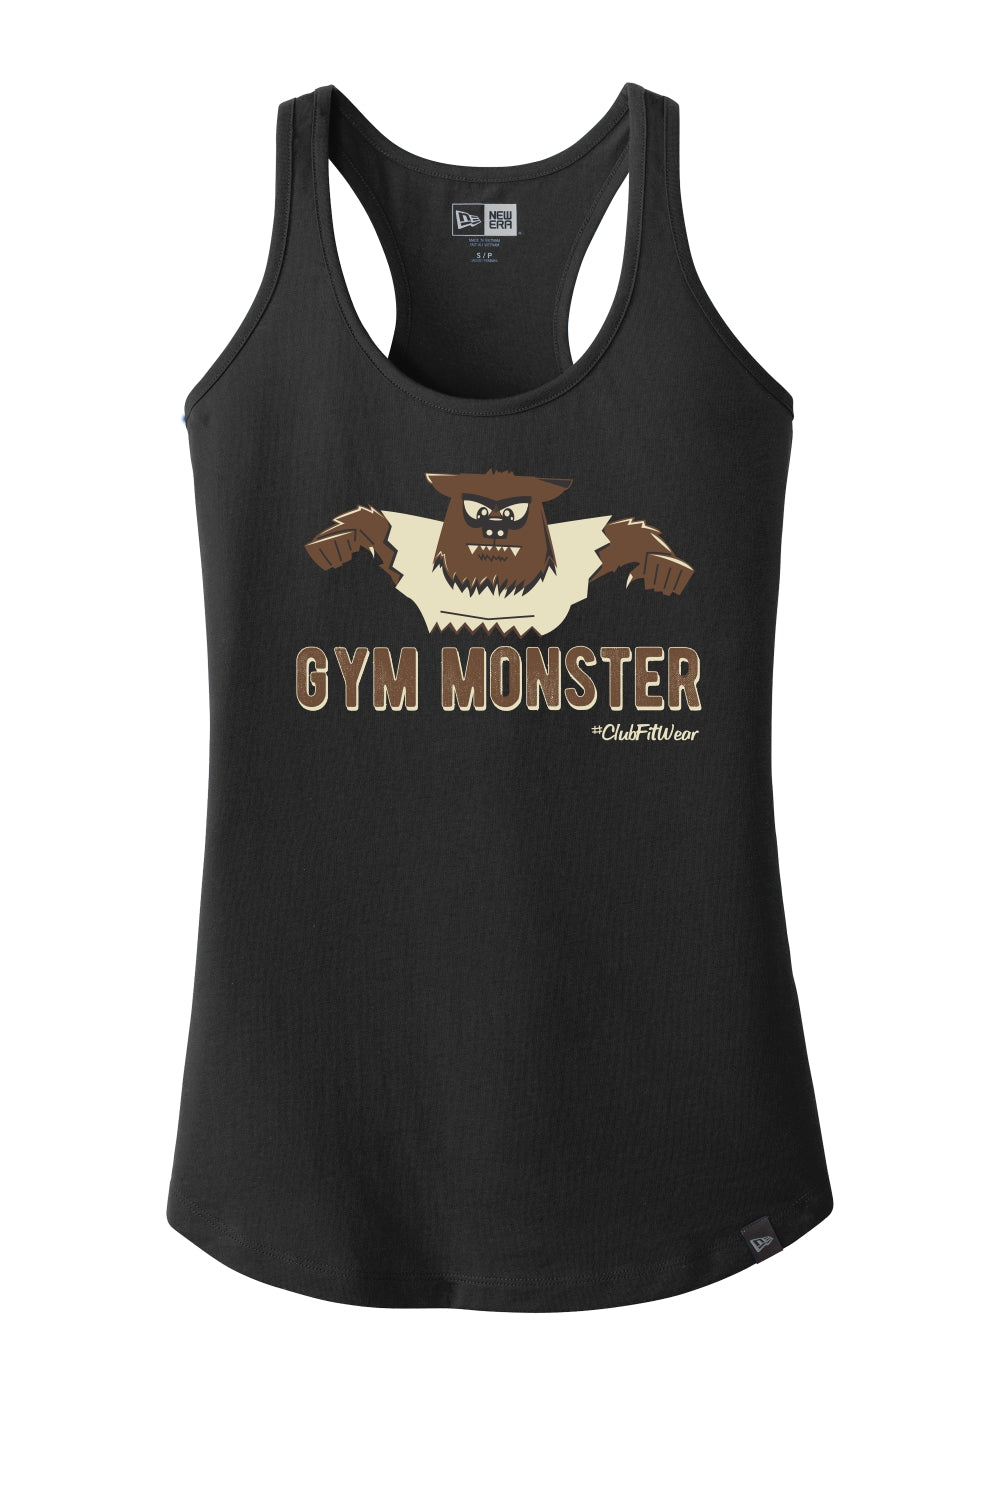 Gym Monster - Werewolf